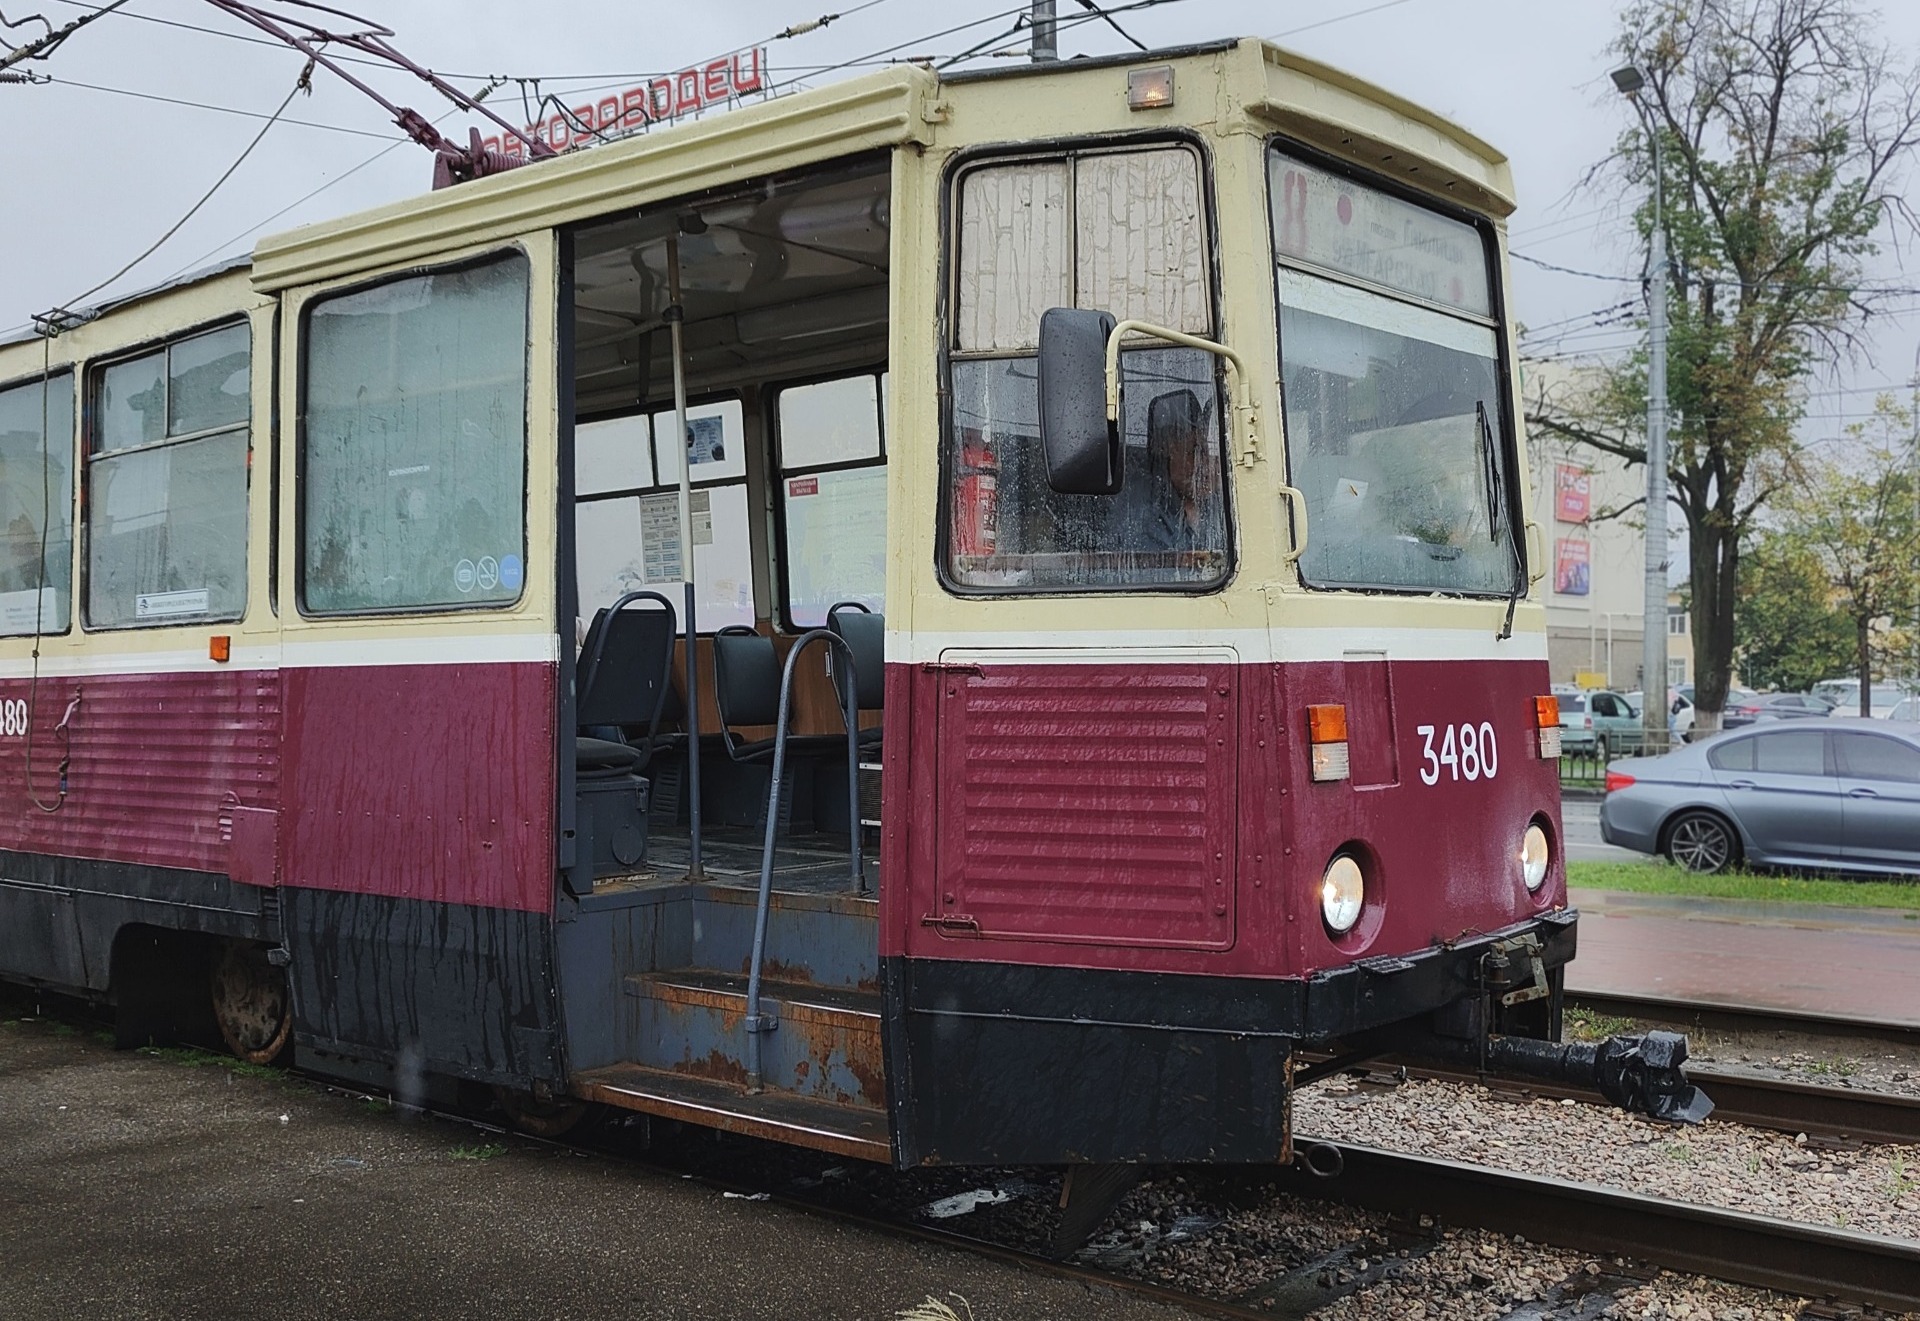 Общественный транспорт в Нижнем Новгороде разочаровал -  ржавый, старый и протекает